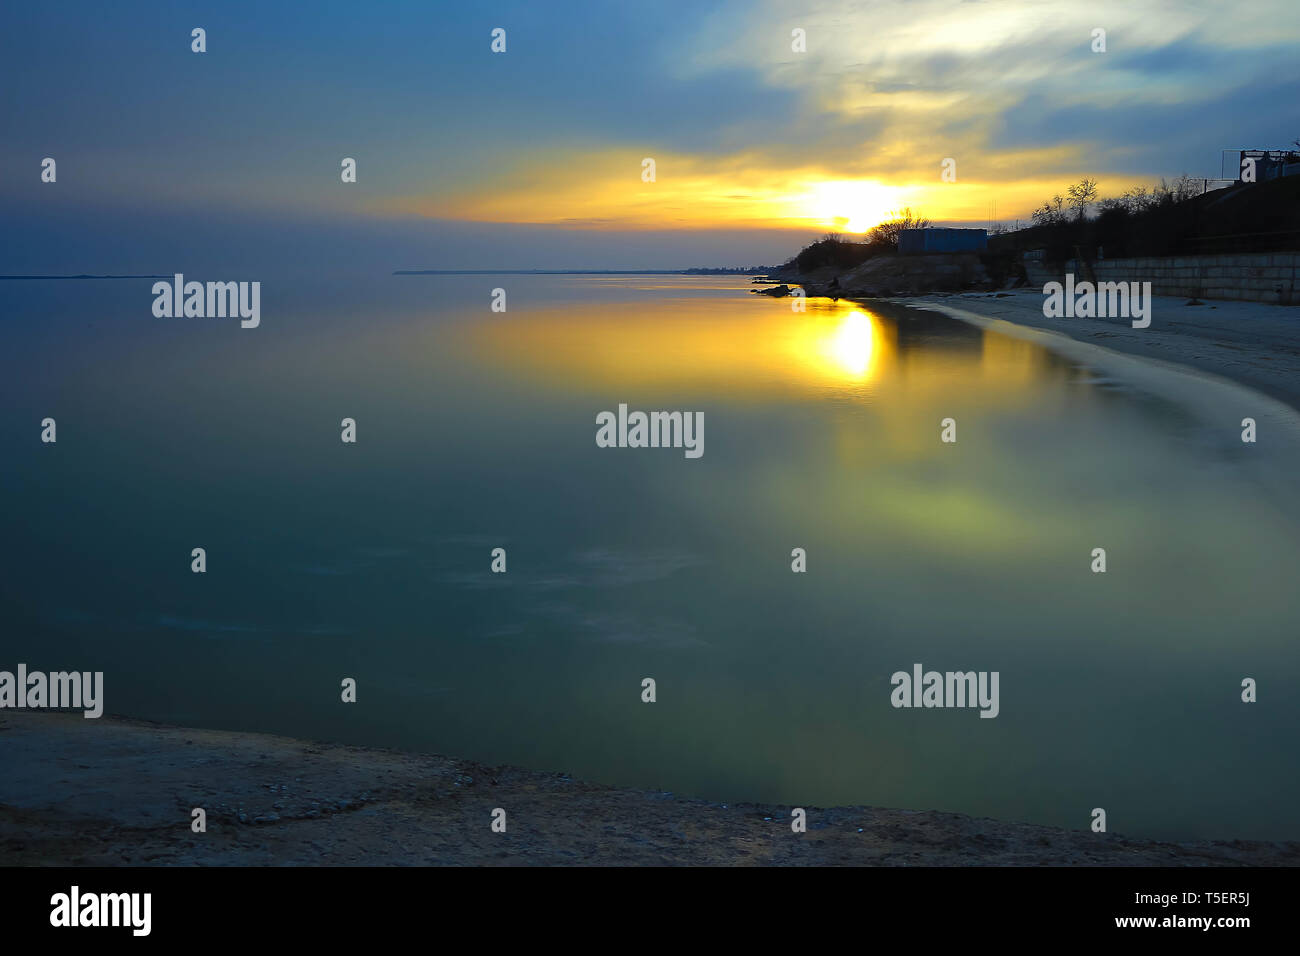 Paesaggio di sera sulla baia. La foto è stata scattata con un filtro neutro. Foto Stock